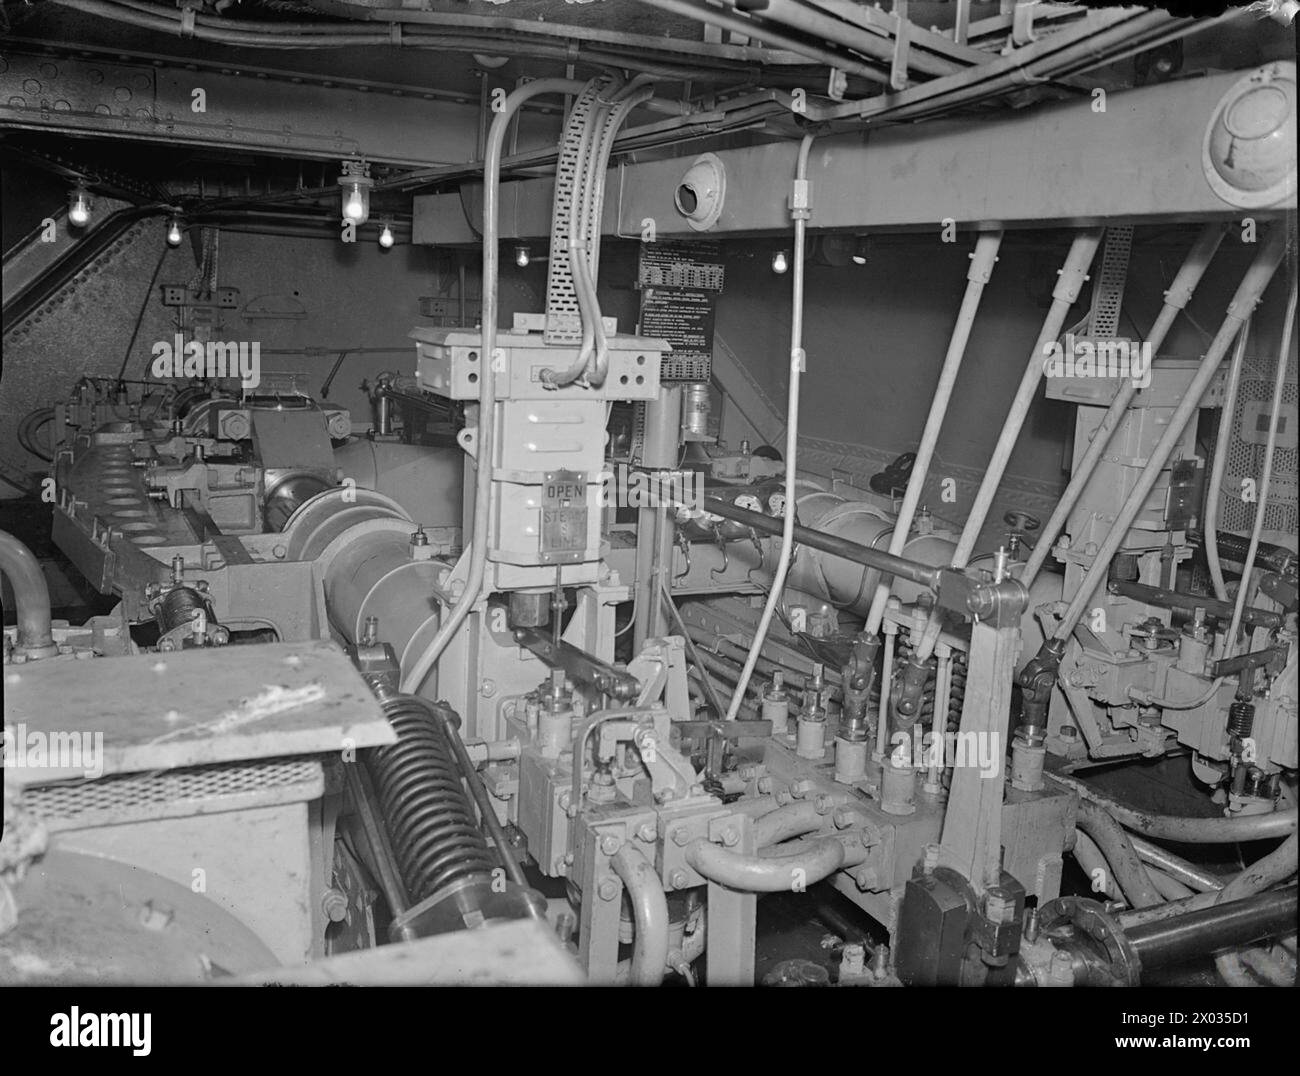 NELLA PORTAEREI BRITANNICA HMS INDEFATIGABLE. 22 FEBBRAIO 1944, ROSYTH. - Vista che guarda a poppa nel vano del cambio dopo sterzo, contenente le due unità di pompaggio Williams-Janney a comando elettrico Foto Stock